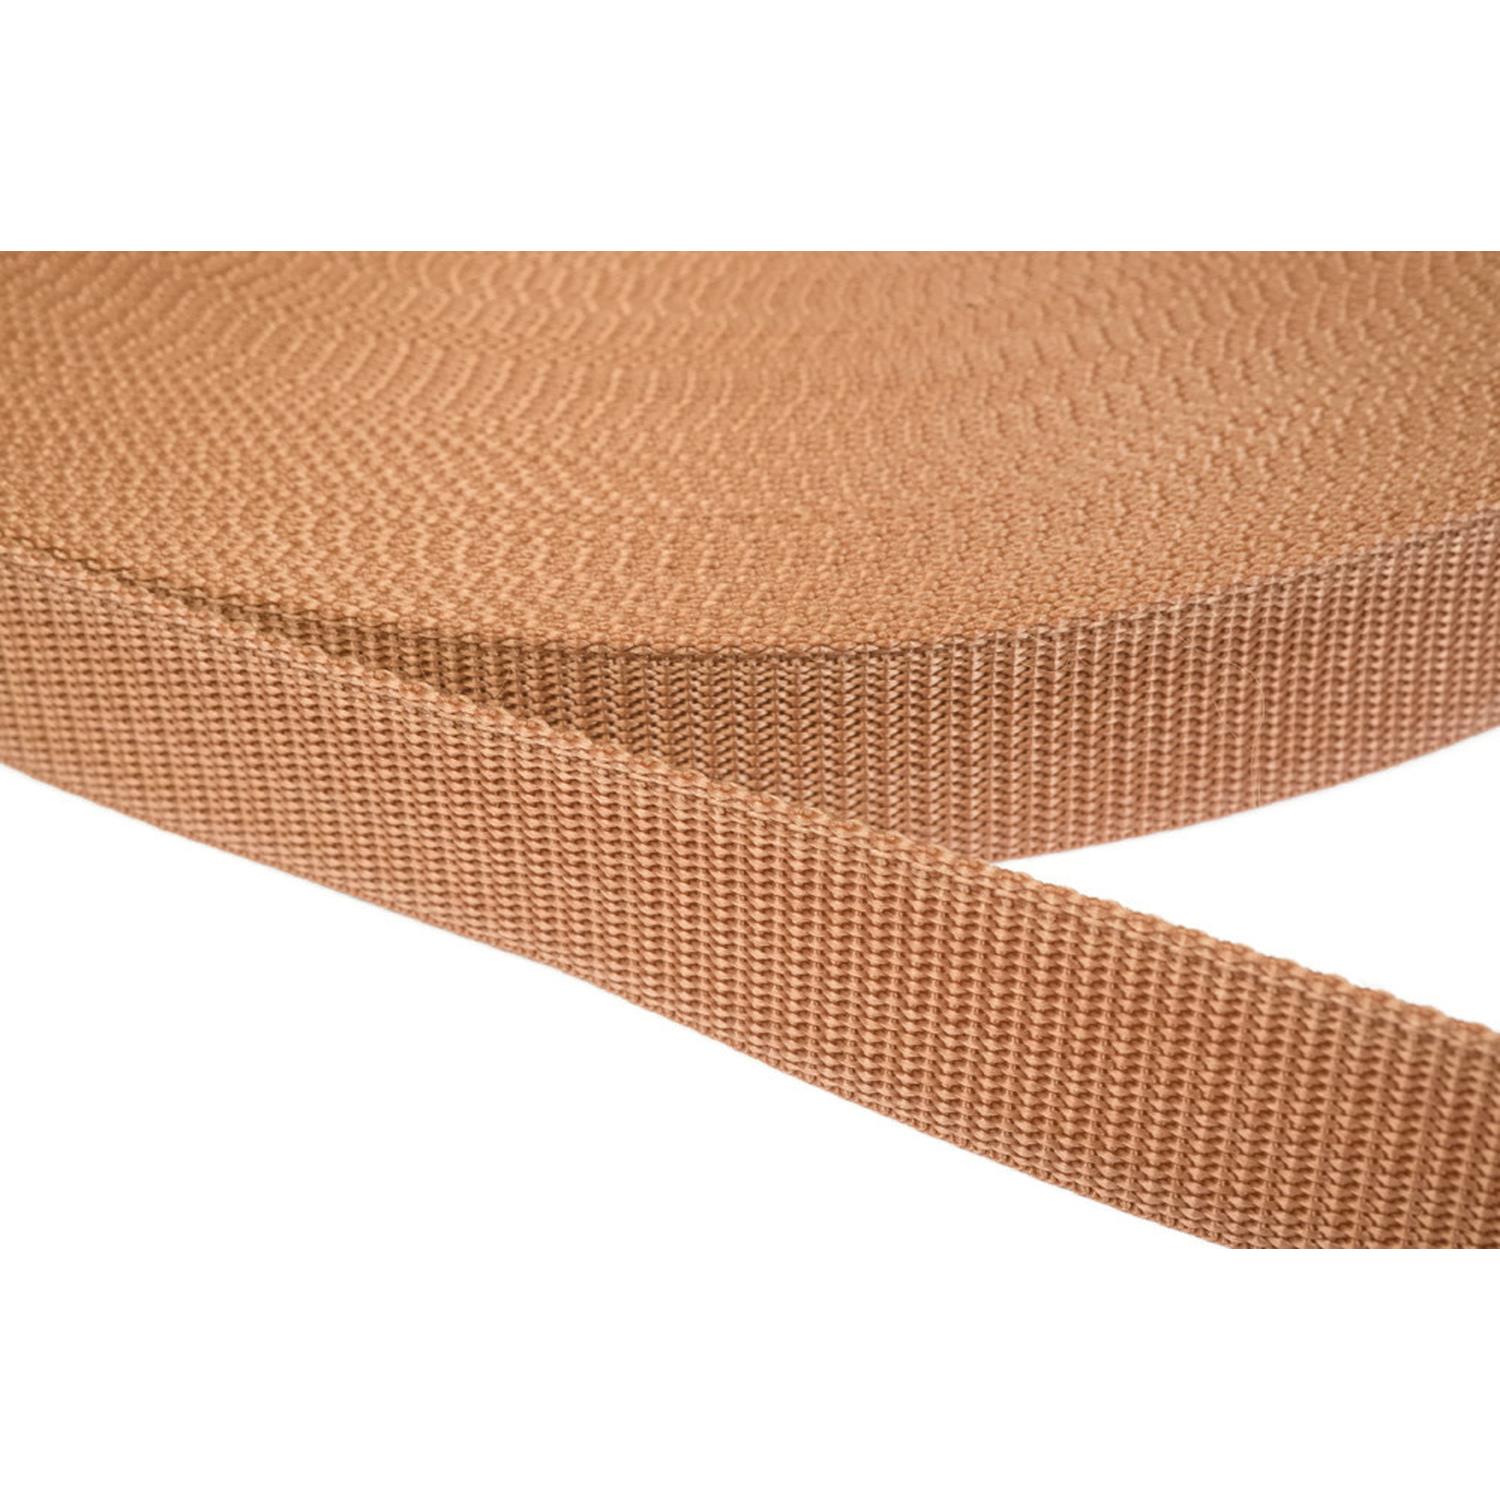 Gurtband 40mm breit aus Polypropylen in 41 Farben 06 - hellbraun 12 Meter